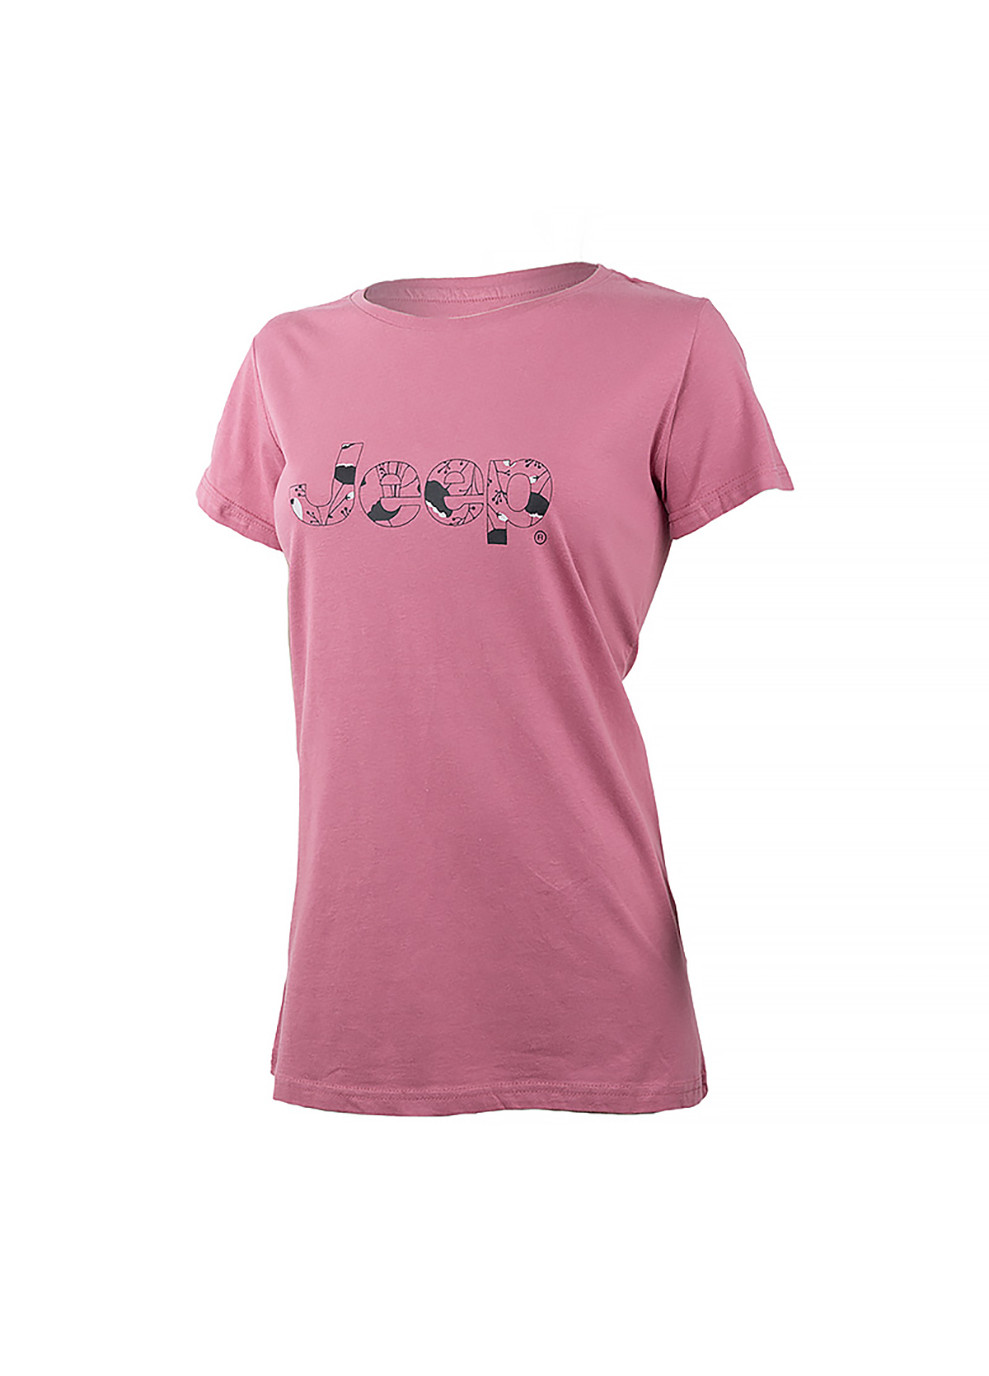 Фиолетовая демисезон женская футболка t-shirt botanical print j22w фиолетовый Jeep